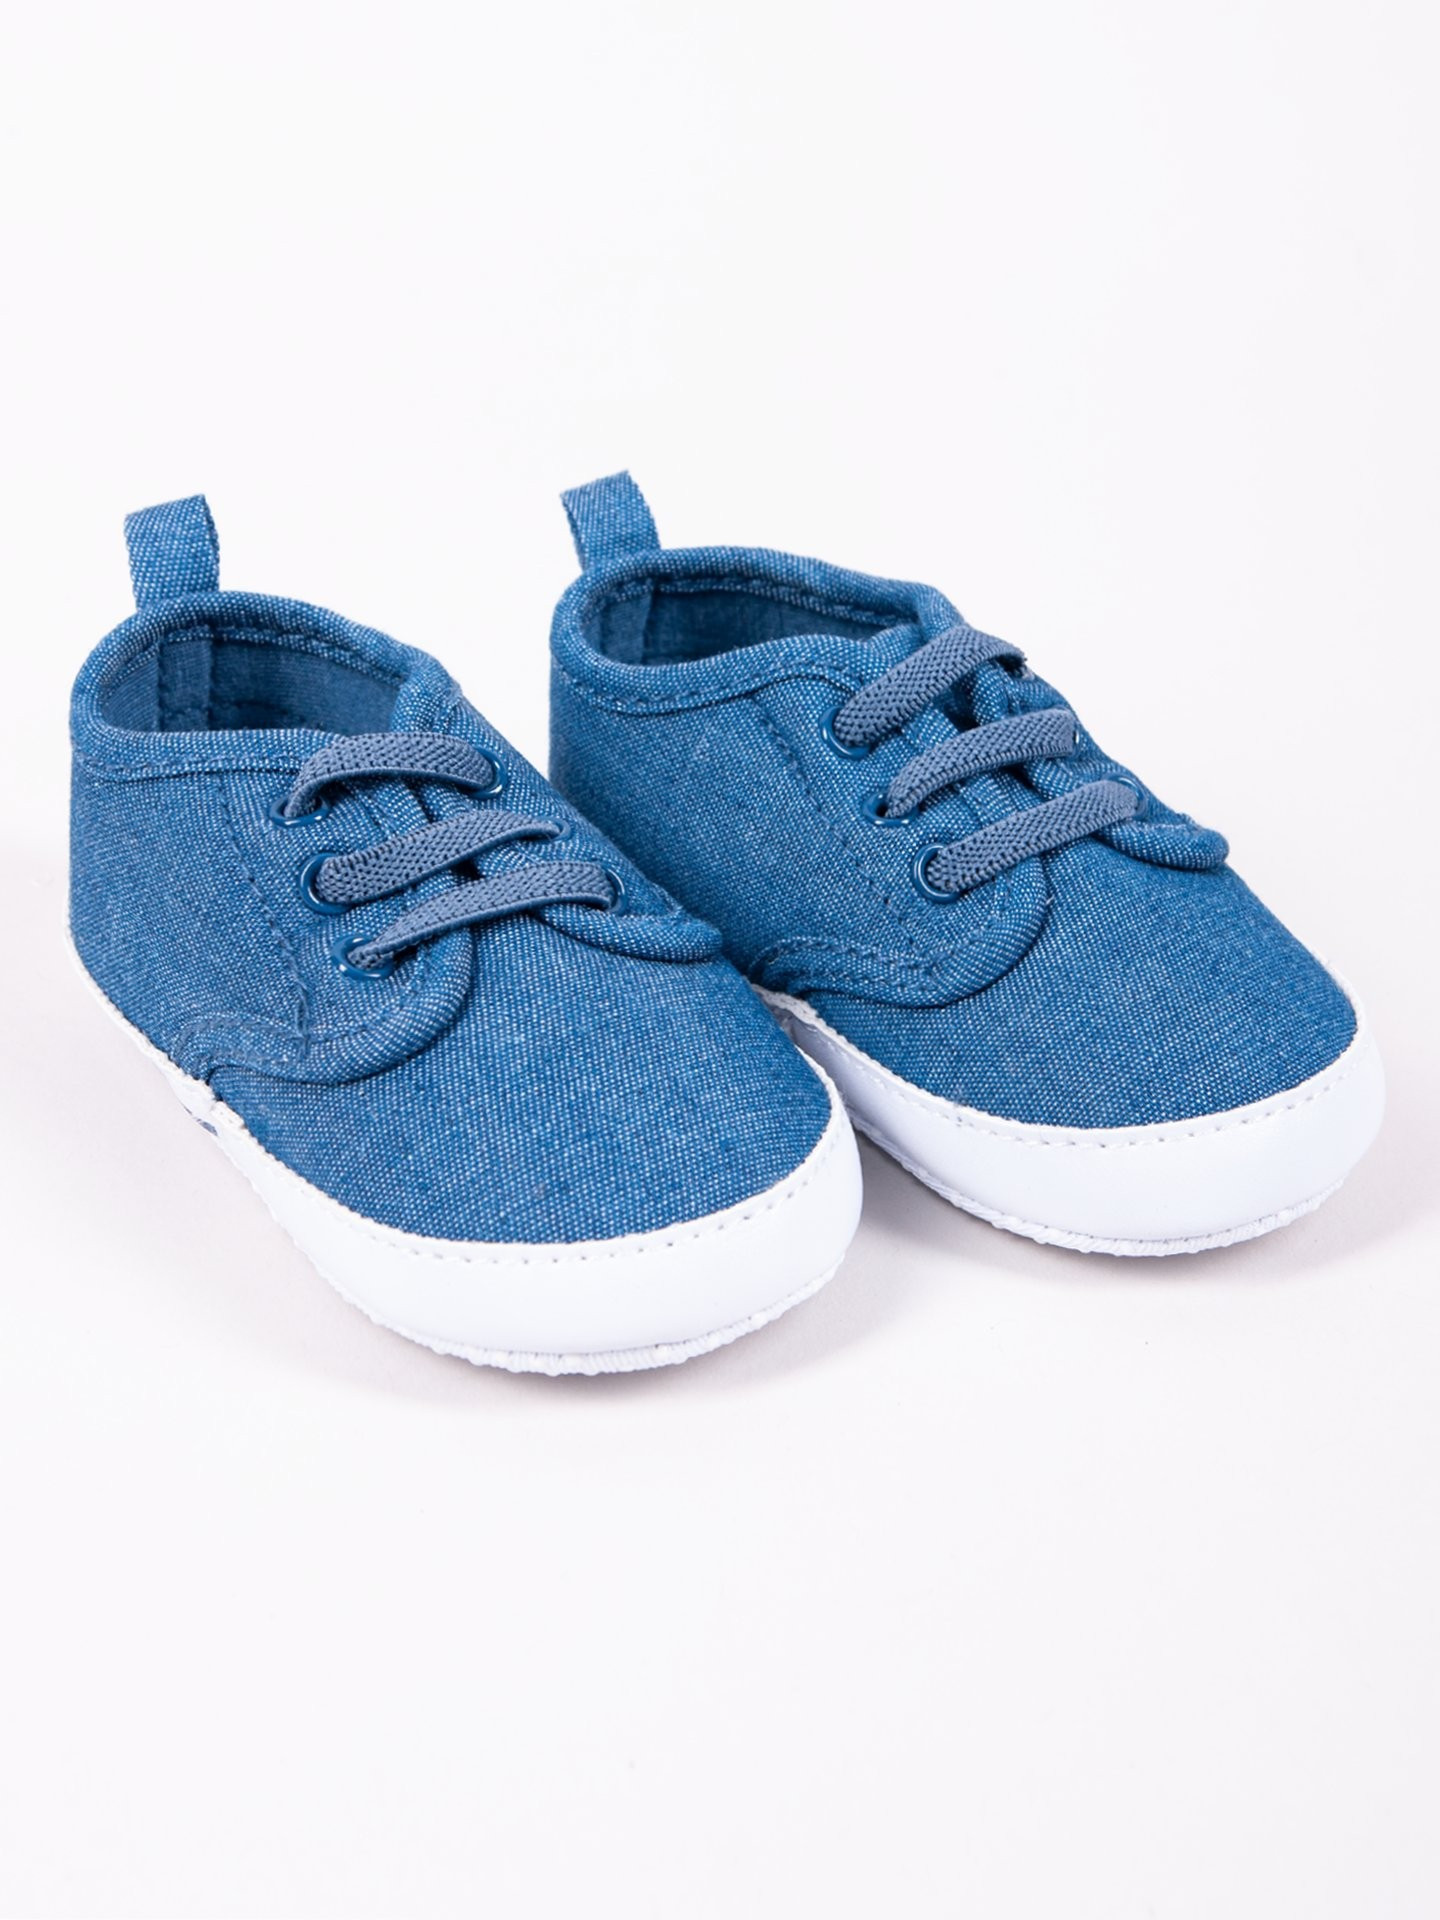 Yoclub Dětské chlapecké boty OBO-0176C-1900 Denim 3-9 měsíců